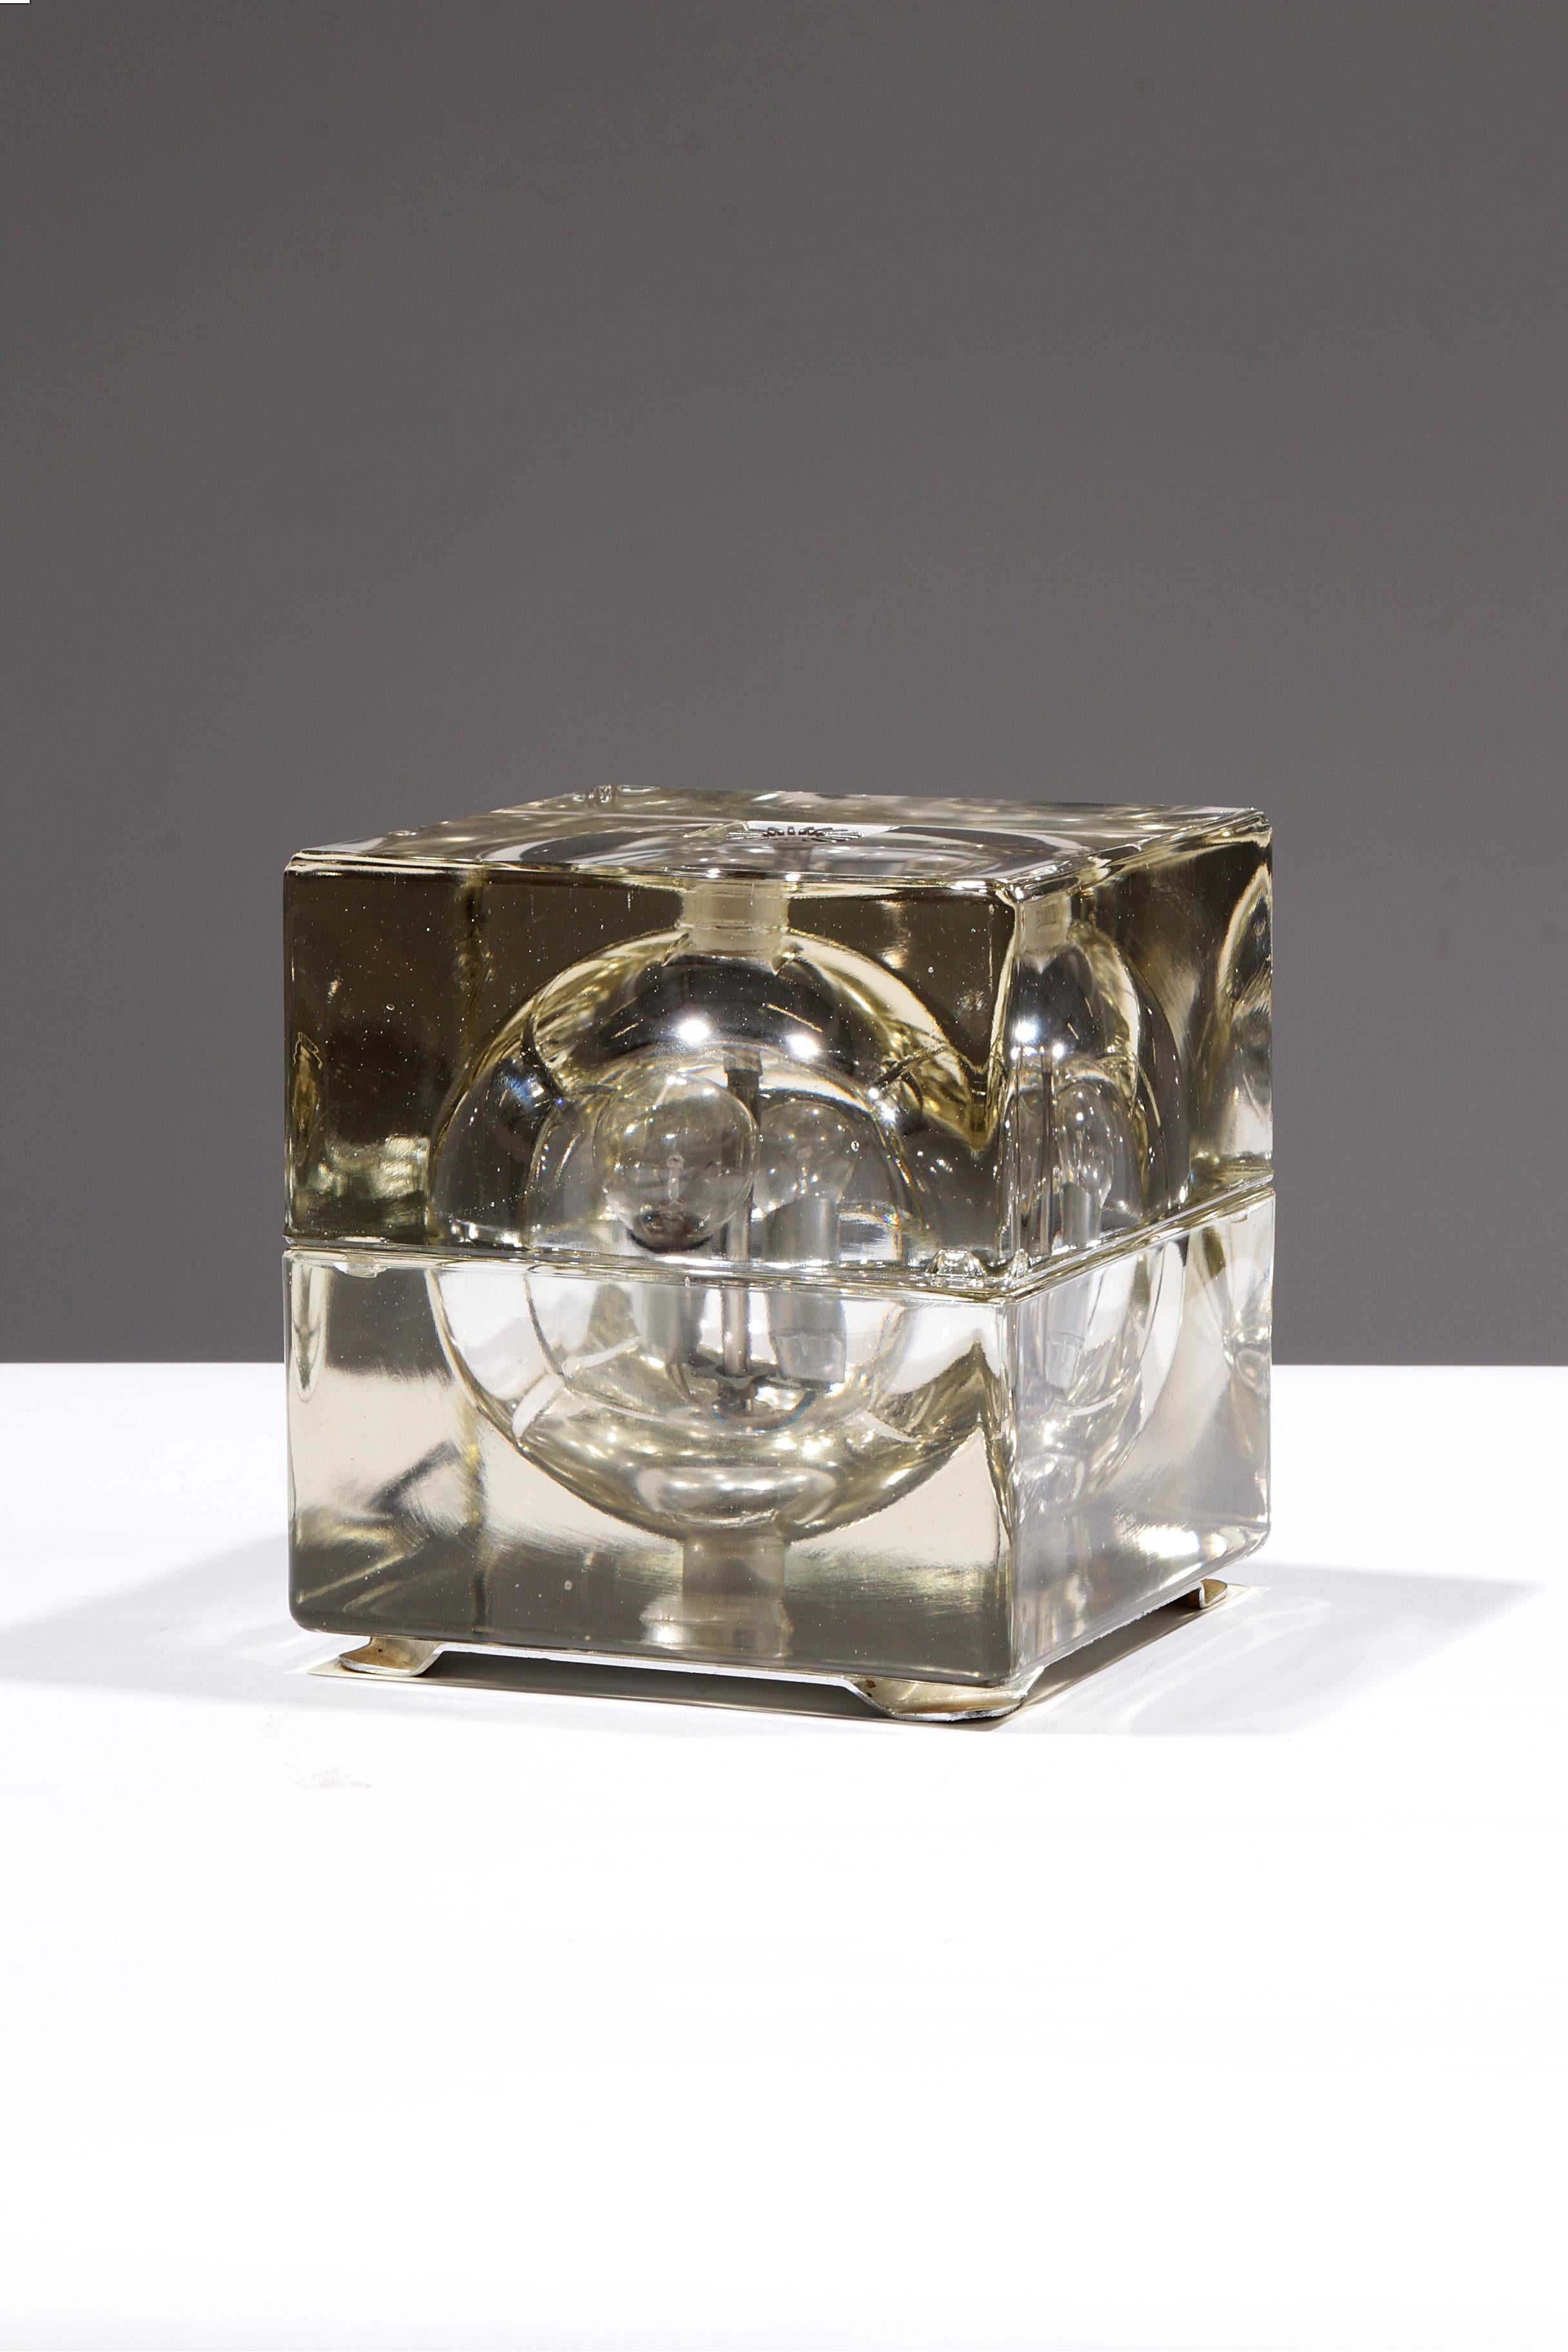 Découvrez l'élégance intemporelle et le design unique de la lampe à poser Cubosfera, conçue par le célèbre designer italien Alessandro Mendini en 1968. Cette lampe spéciale, produite par Fidenza Vetraria, est un chef-d'œuvre de verre de cristal